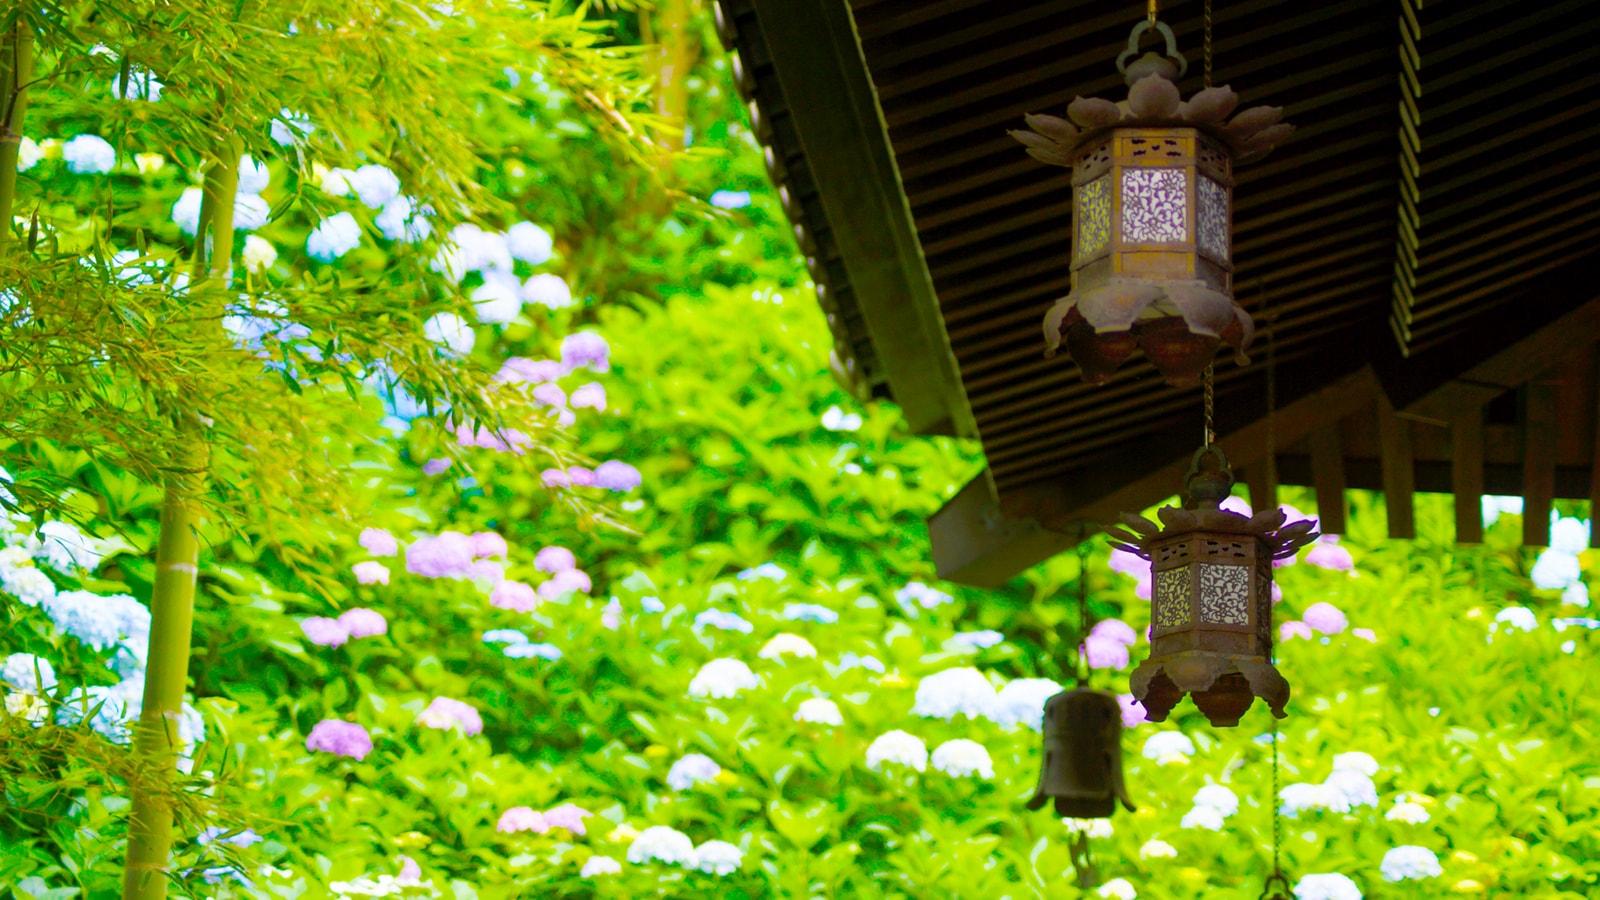 あじさいの花と葉の緑、そして竹の緑、建物が作り出す美しいコントラスト - -神奈川県鎌倉市にある観光、撮影スポット- -